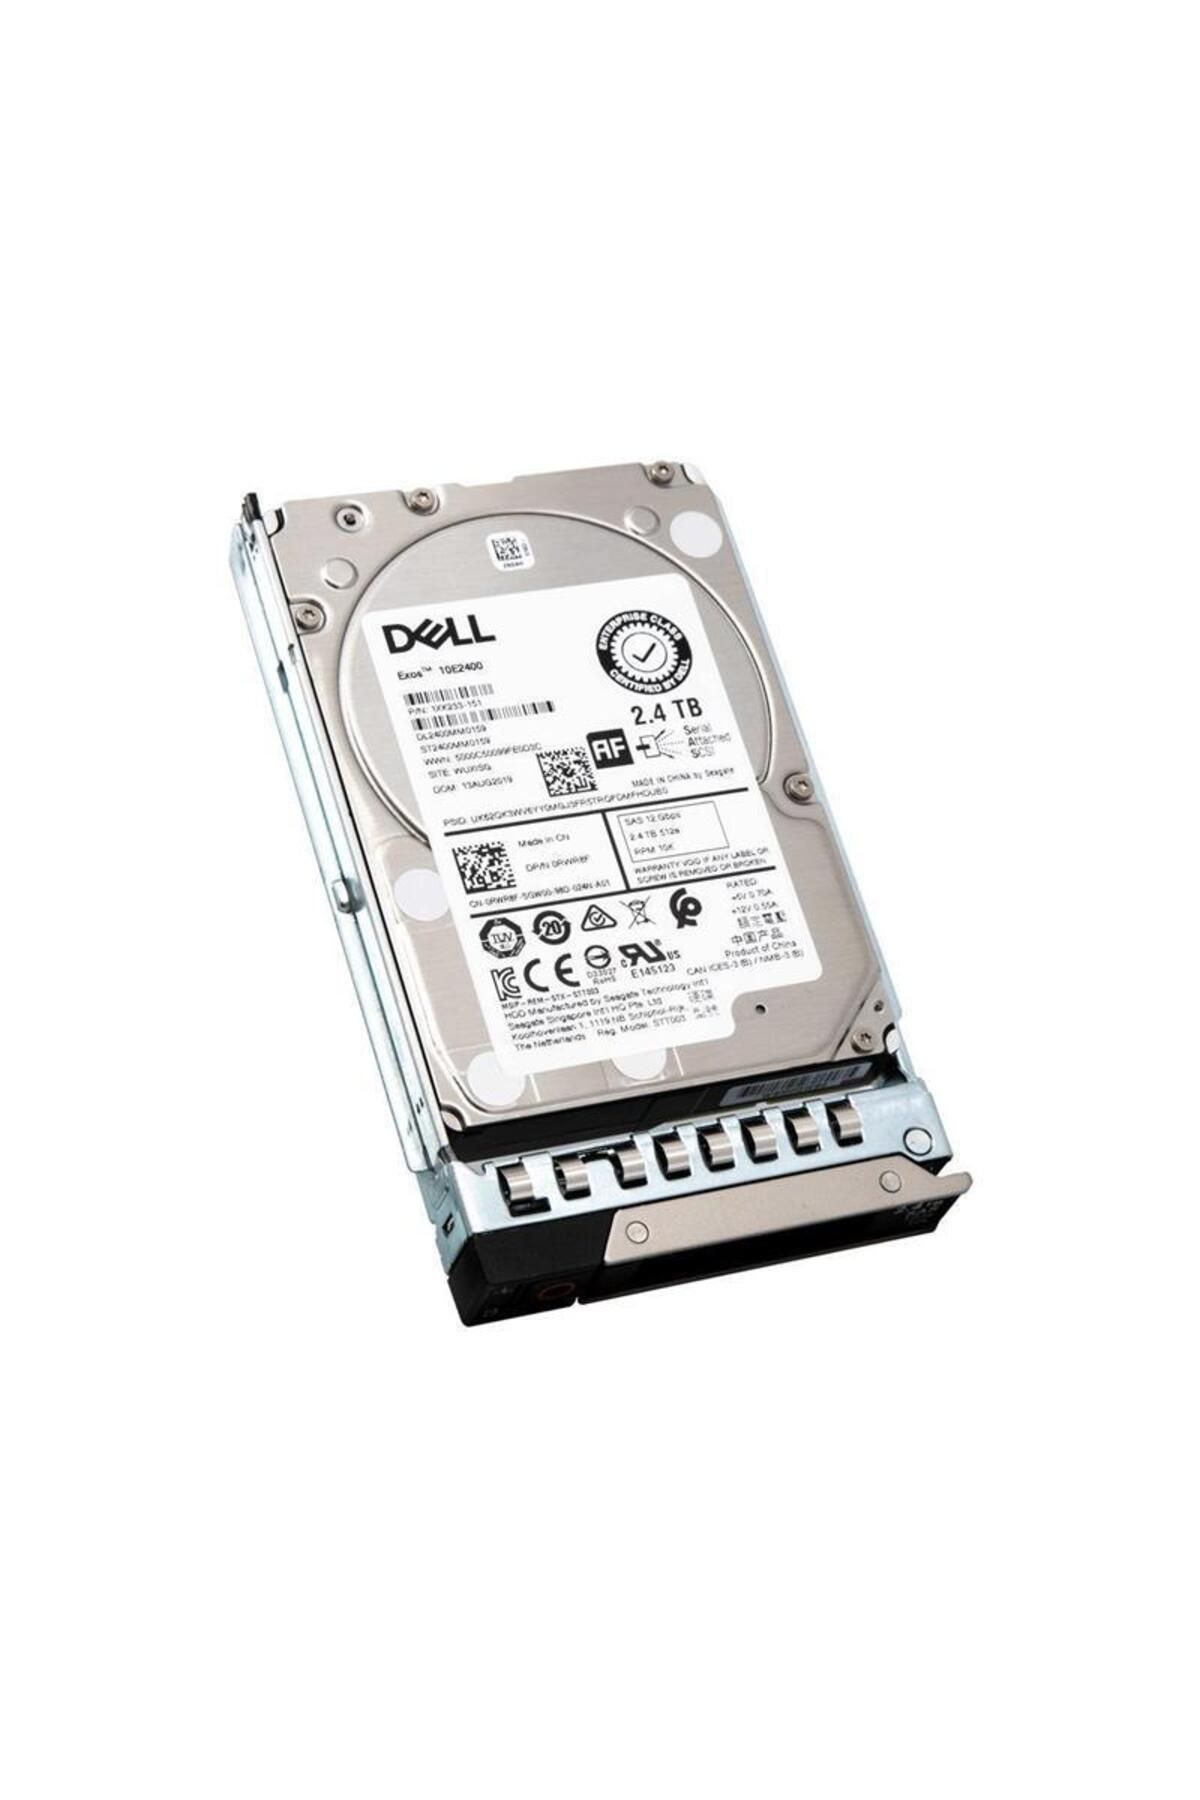 Dell 2.4 TB DELL 2.5" 10K 12G RPM SAS 512E A-401-ABHQ